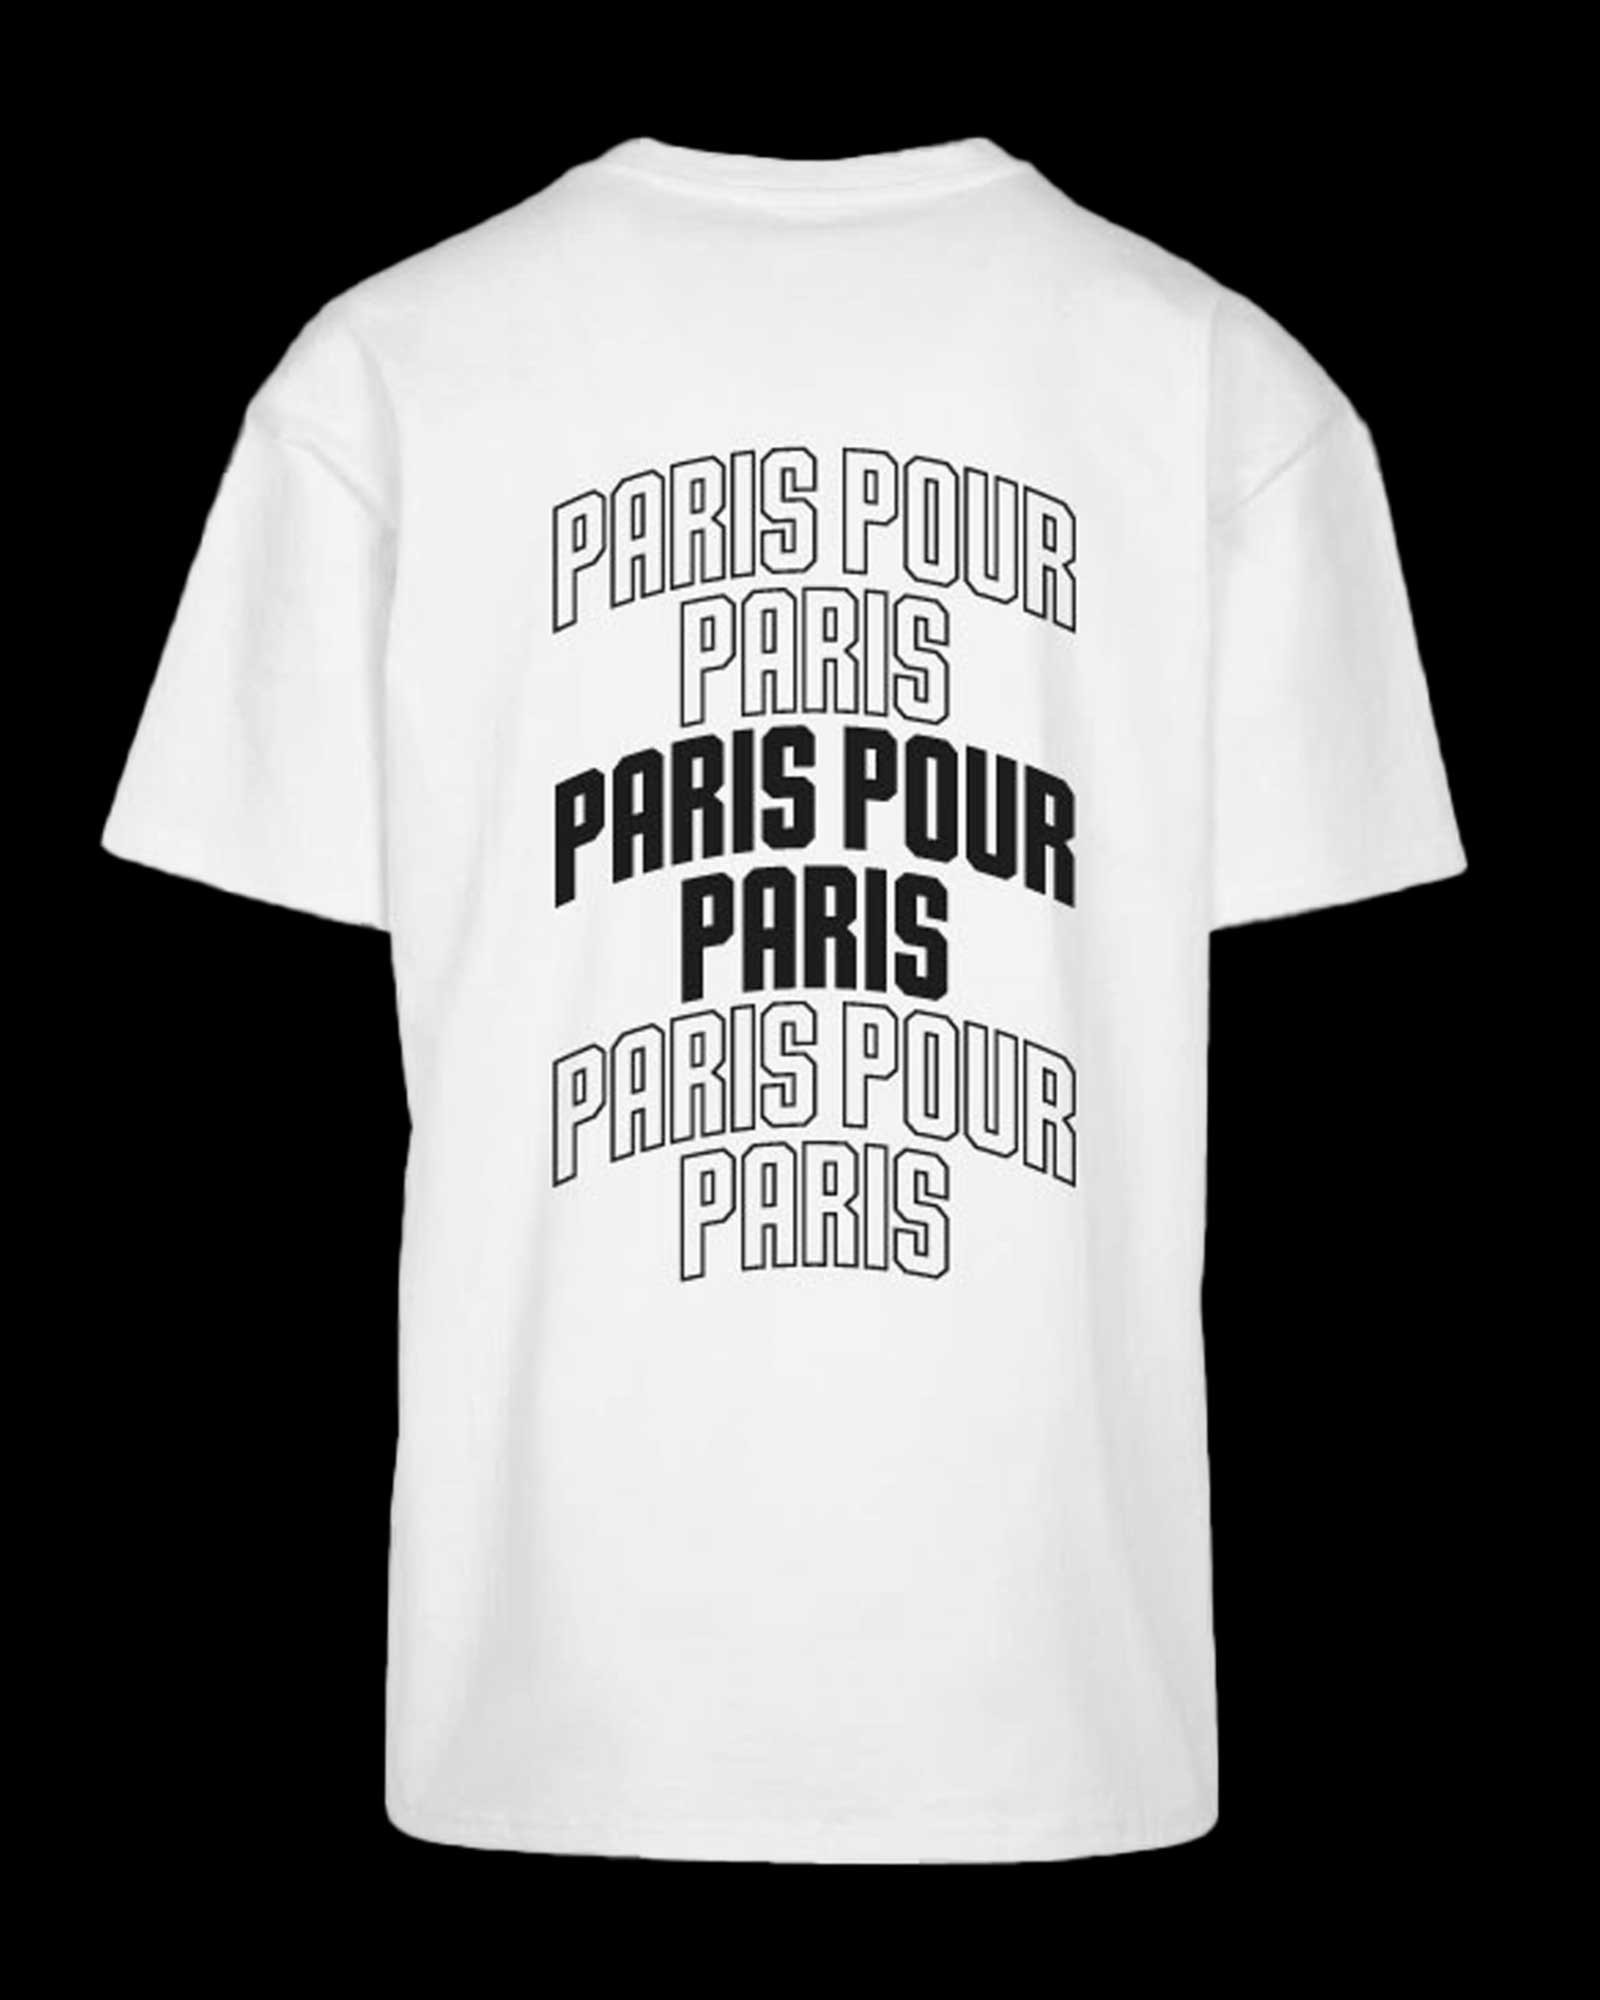 T-shirt Paris Pour Paris